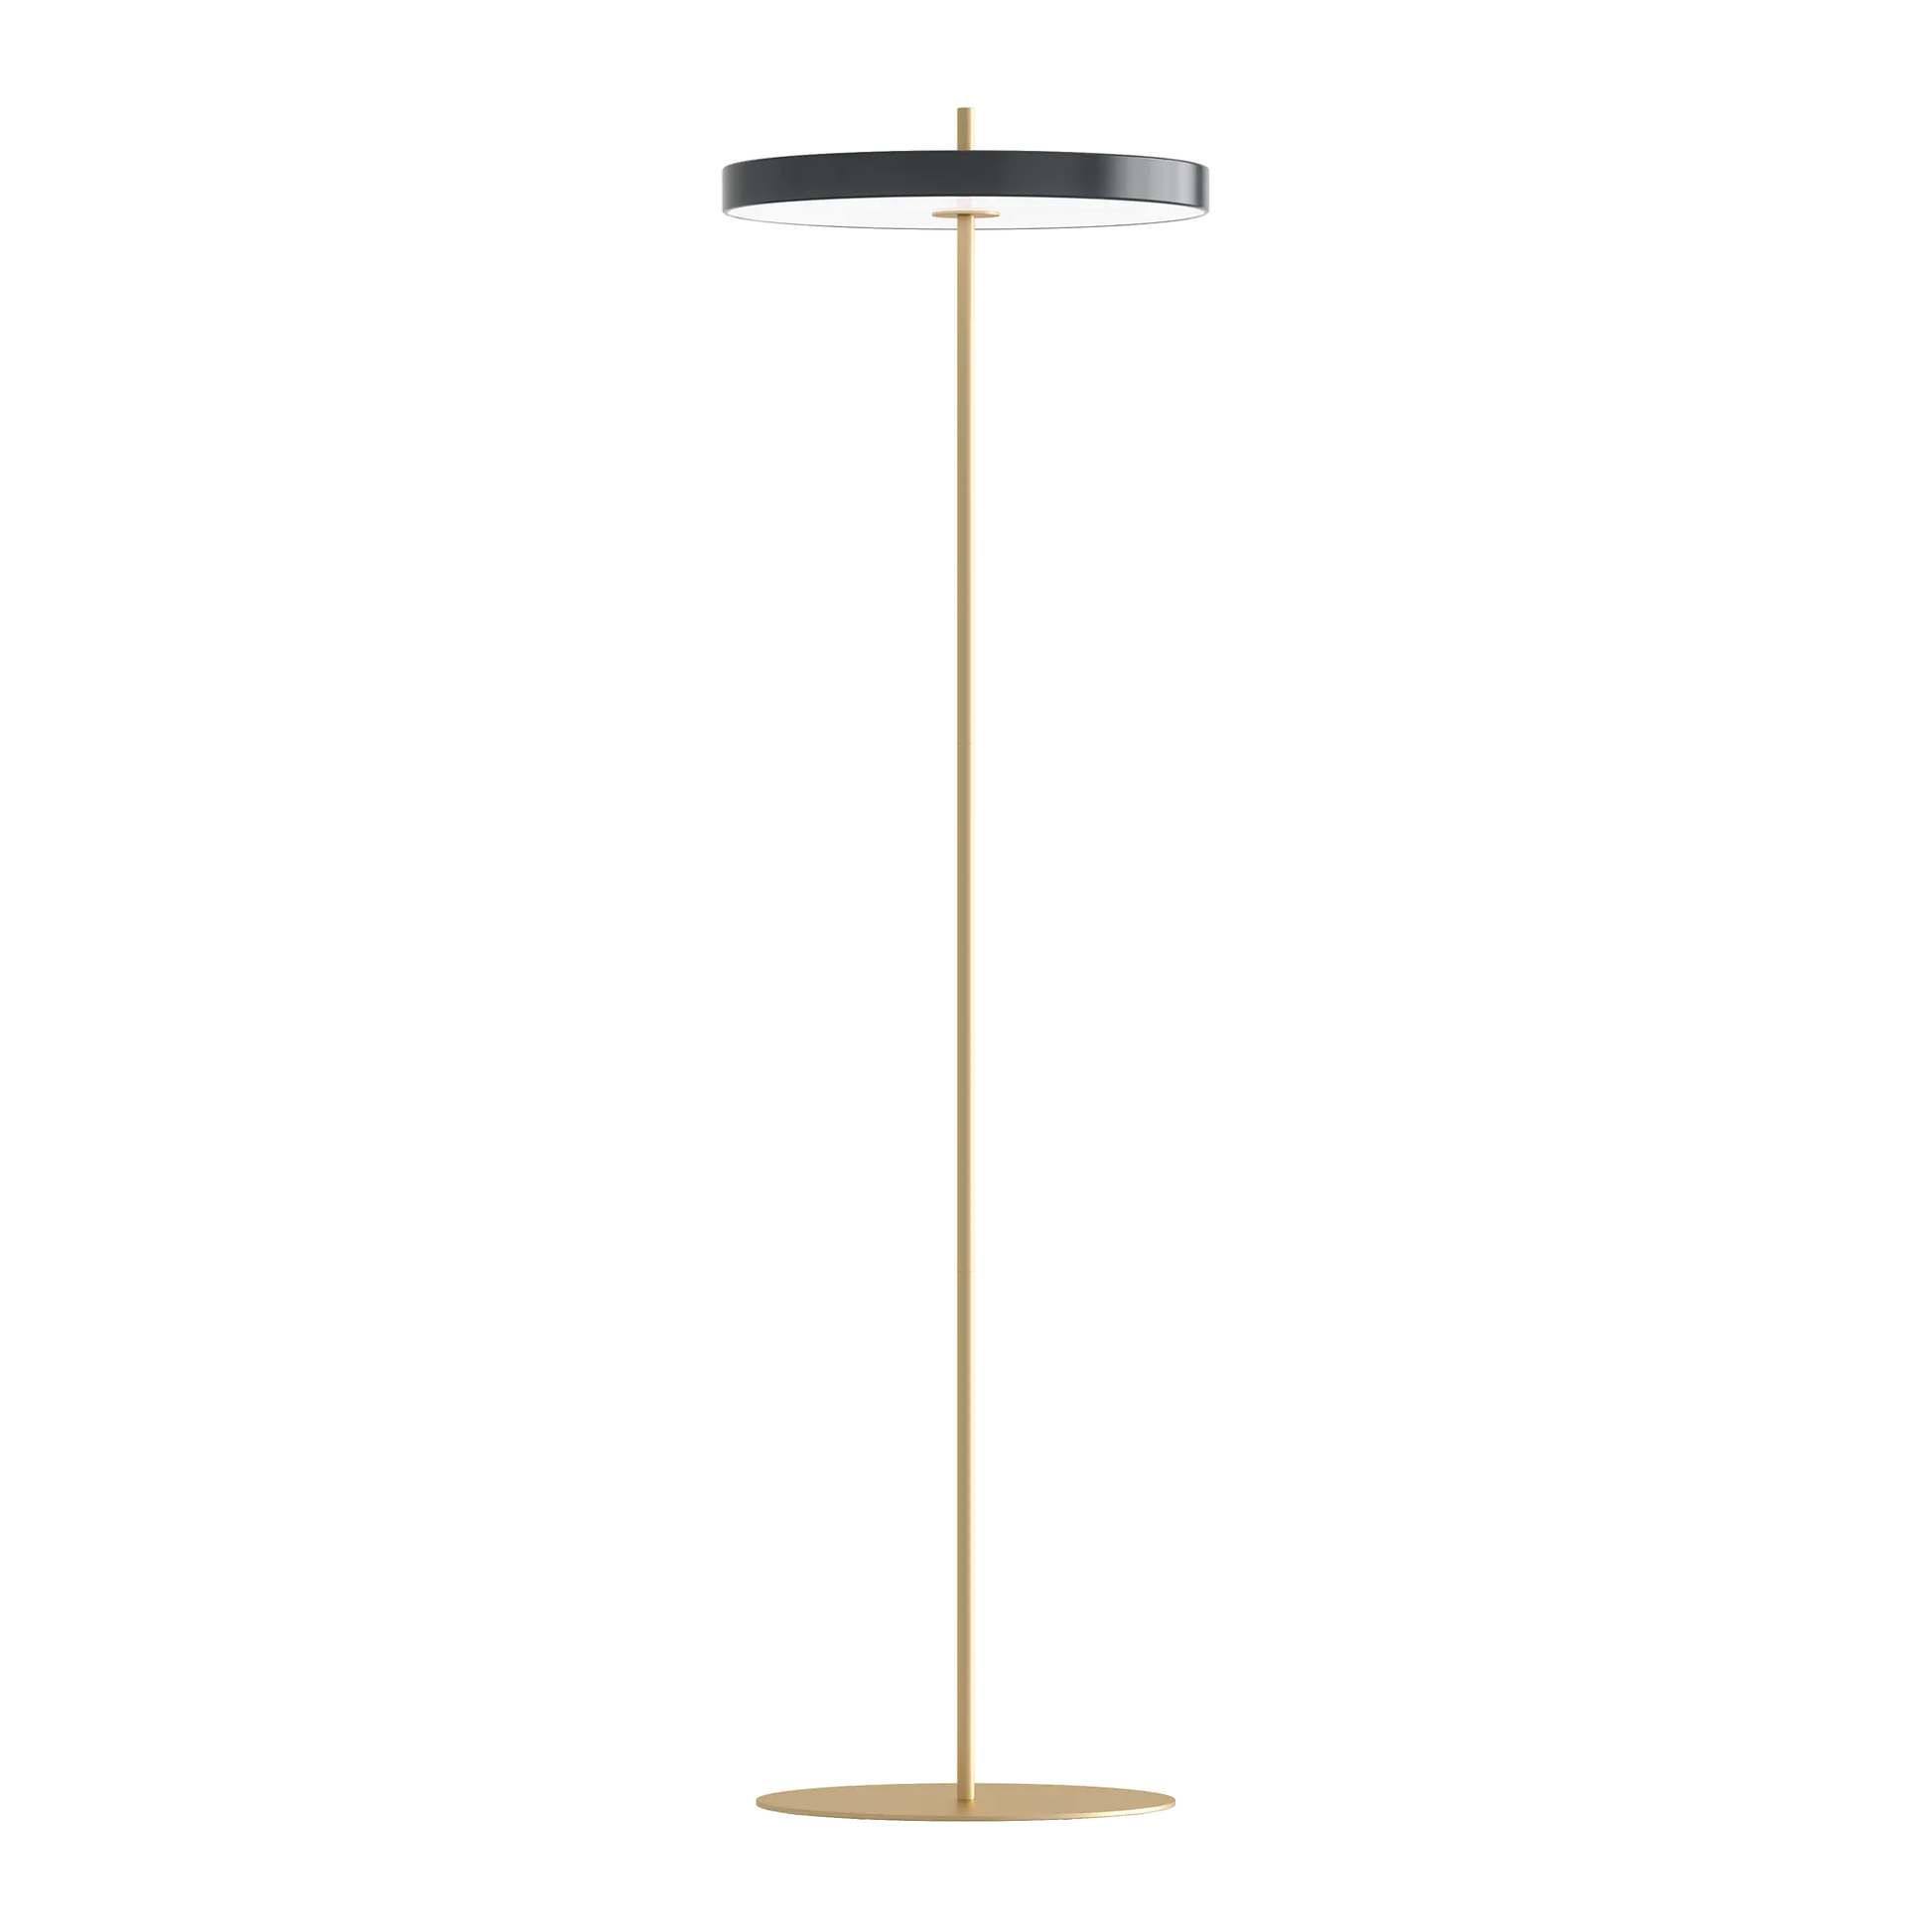 Asteria golvlampa i dansk design från Umage i färgen Anthracite